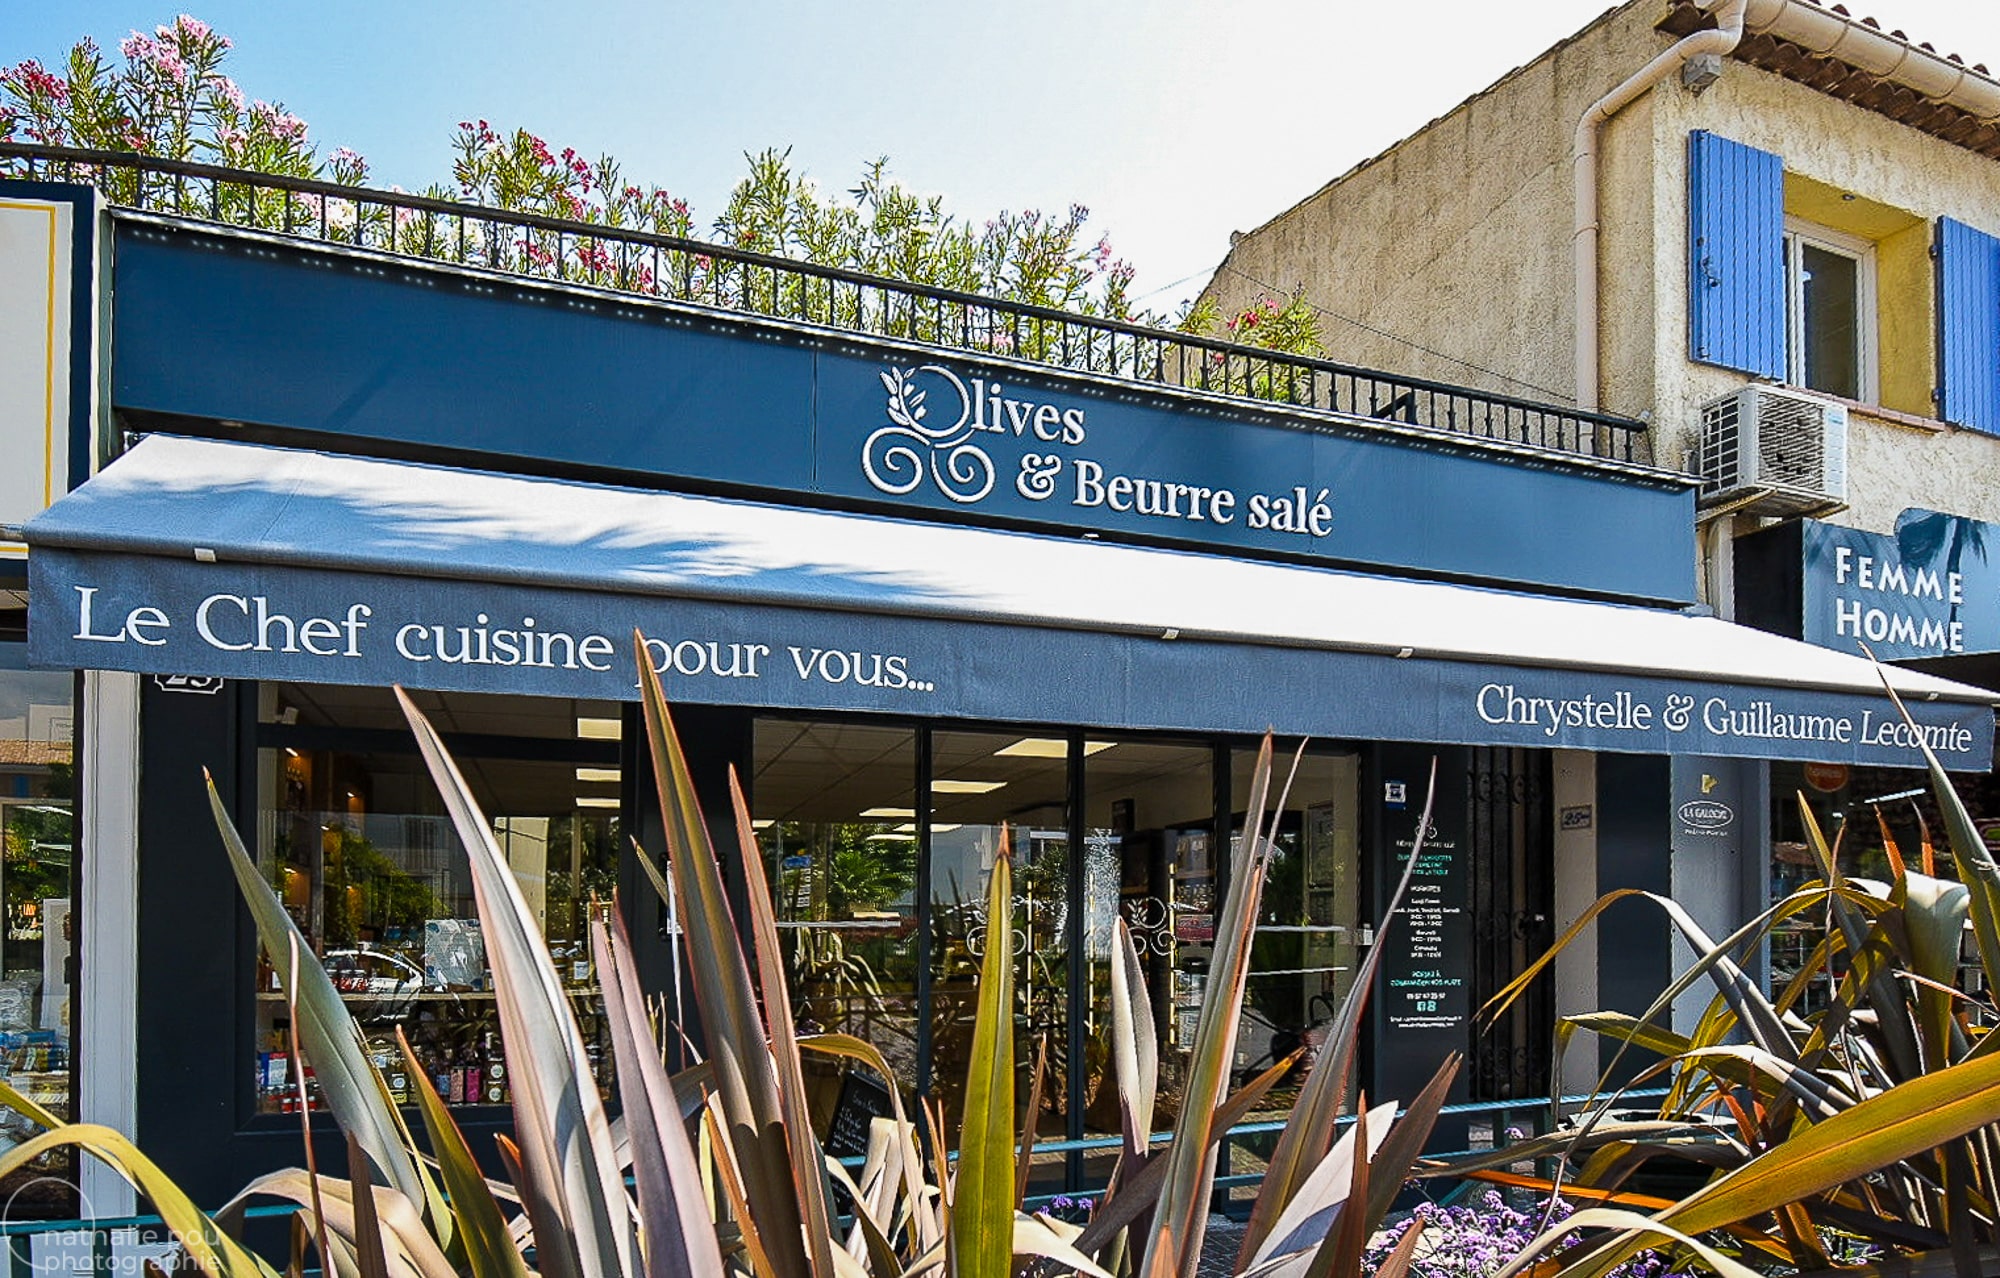 Photographe entreprise: Olives et beurre salé raiteur-Sanary-sur-Mer